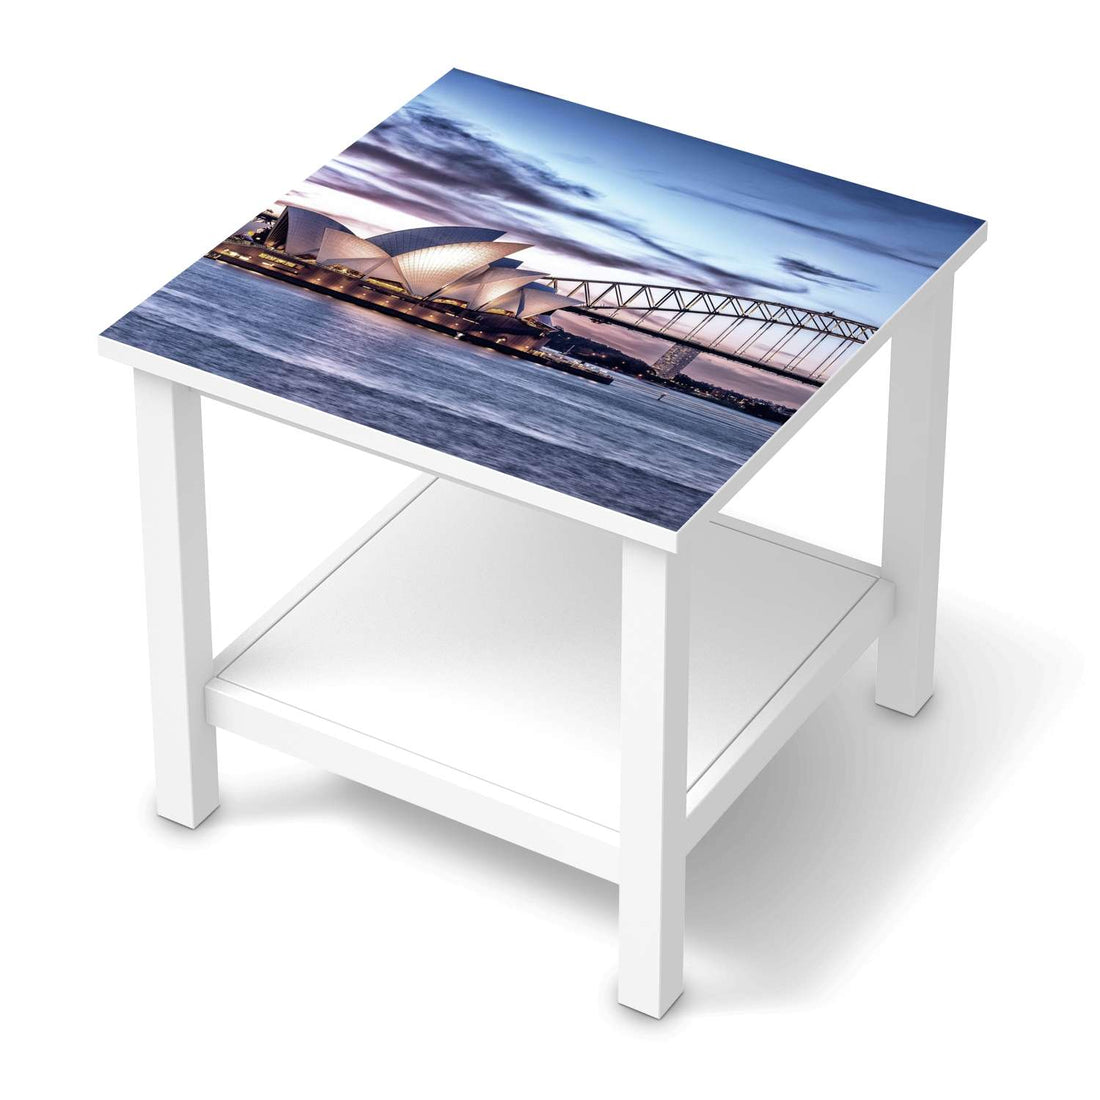 Möbel Klebefolie Sydney - IKEA Hemnes Beistelltisch 55x55 cm  - weiss